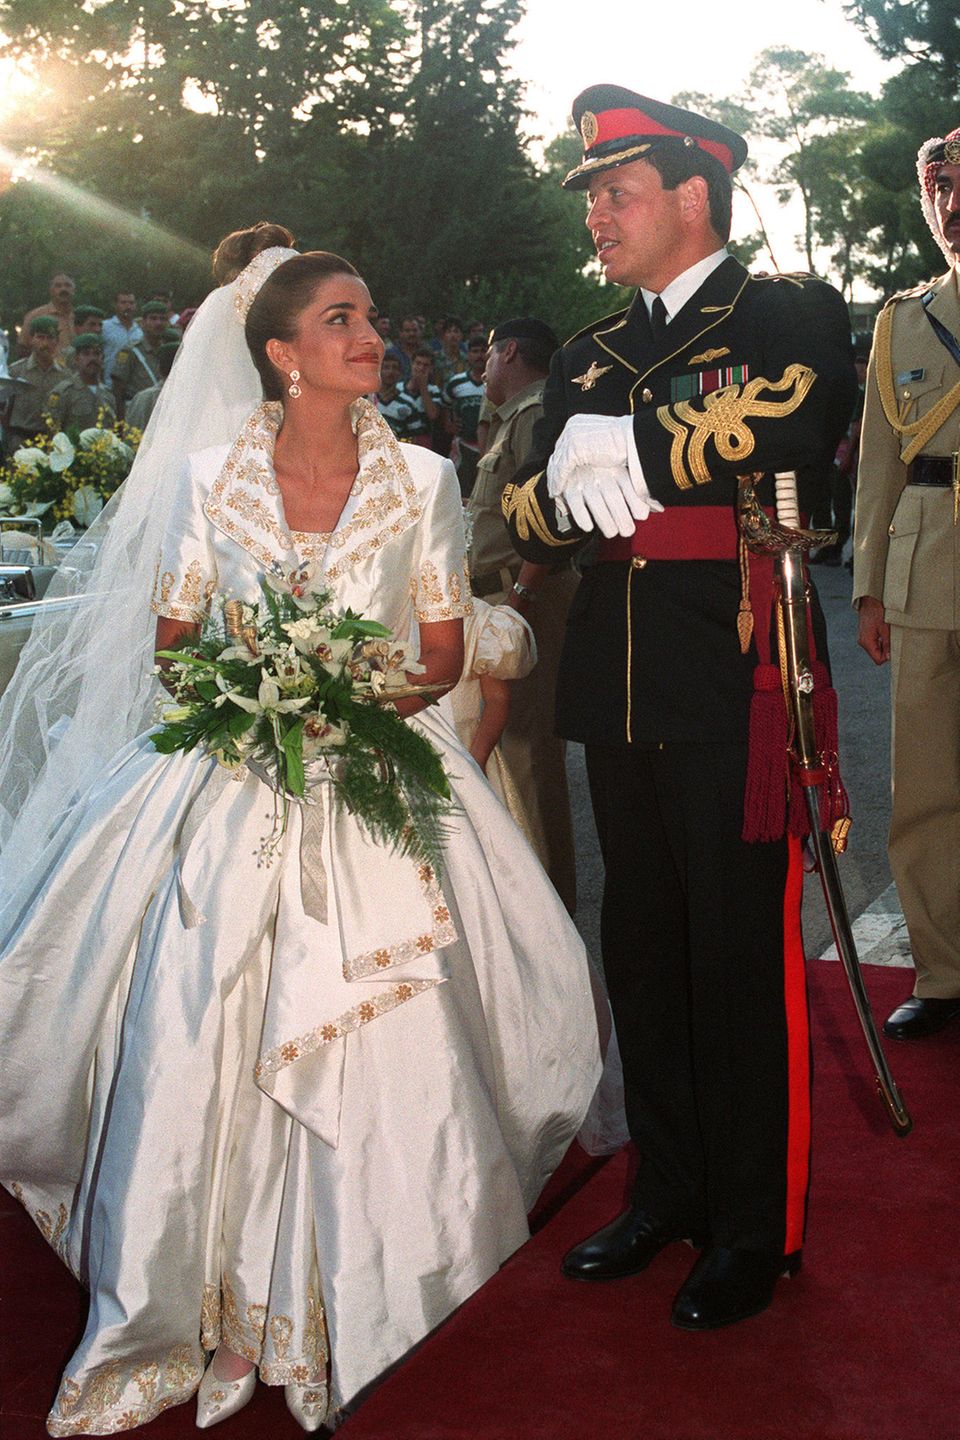 10. Juni 1993  Traumhochzeit im Königreich Jordanien: Prinz Abdullah heiratet seine Angebetete Rania Yasin im Königlichen Palast in Amman, und die zukünftige Königin strahlt dabei in einem schimmernden Satinkleid mit Jäckchen mit großem Kragen und aufwendigen, gold-floralen Stickereien.